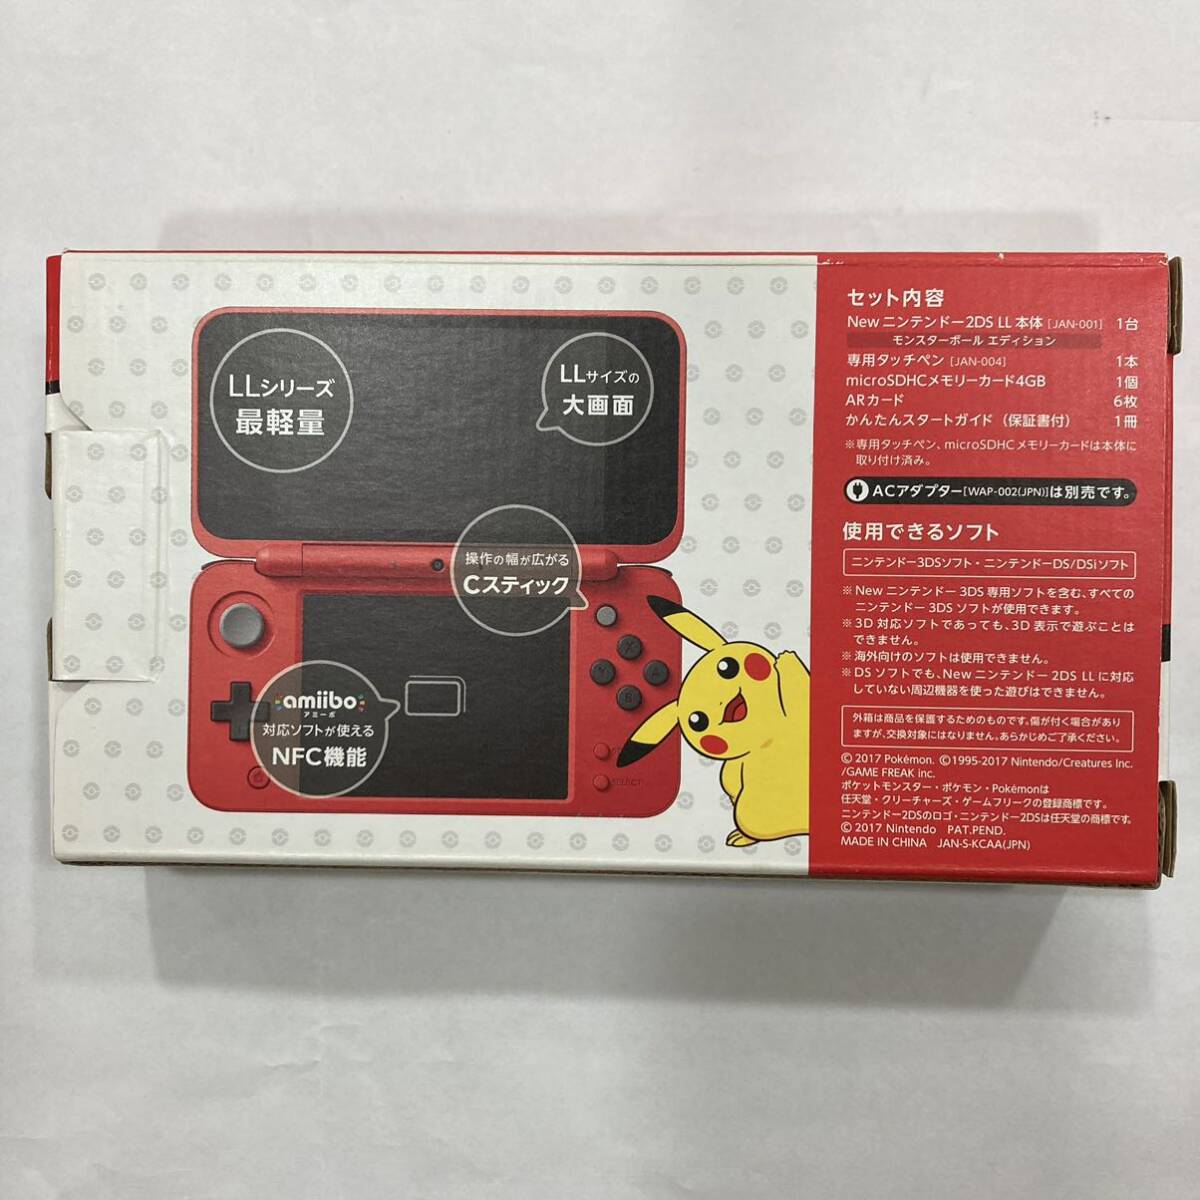 TA*1 иен ~ б/у товар Nintendo 2DSLL корпус Pokemon Monstar мяч выпуск nintendo JAN-001 с коробкой рабочее состояние подтверждено 